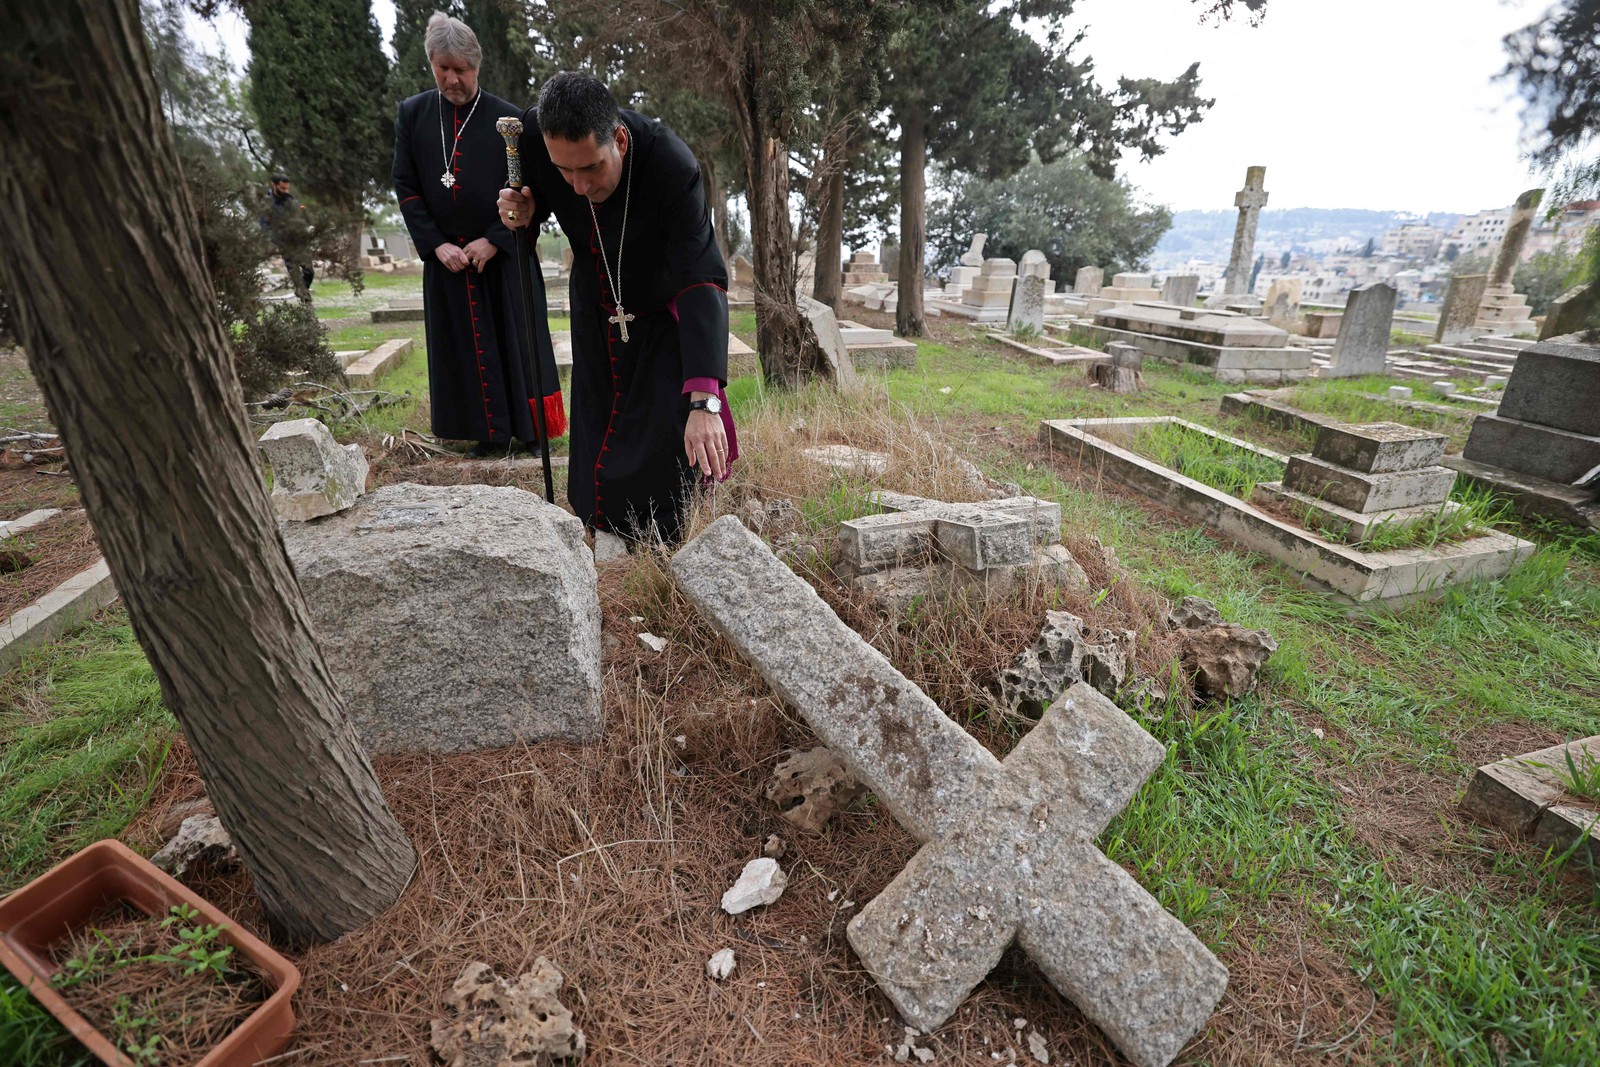 Zeladores do cemitério protestante inspecionam túmulos vandalizados no Monte Sião, fora da Cidade Velha de Jerusalém.  — Foto: AHMAD GHARABLI / AFP